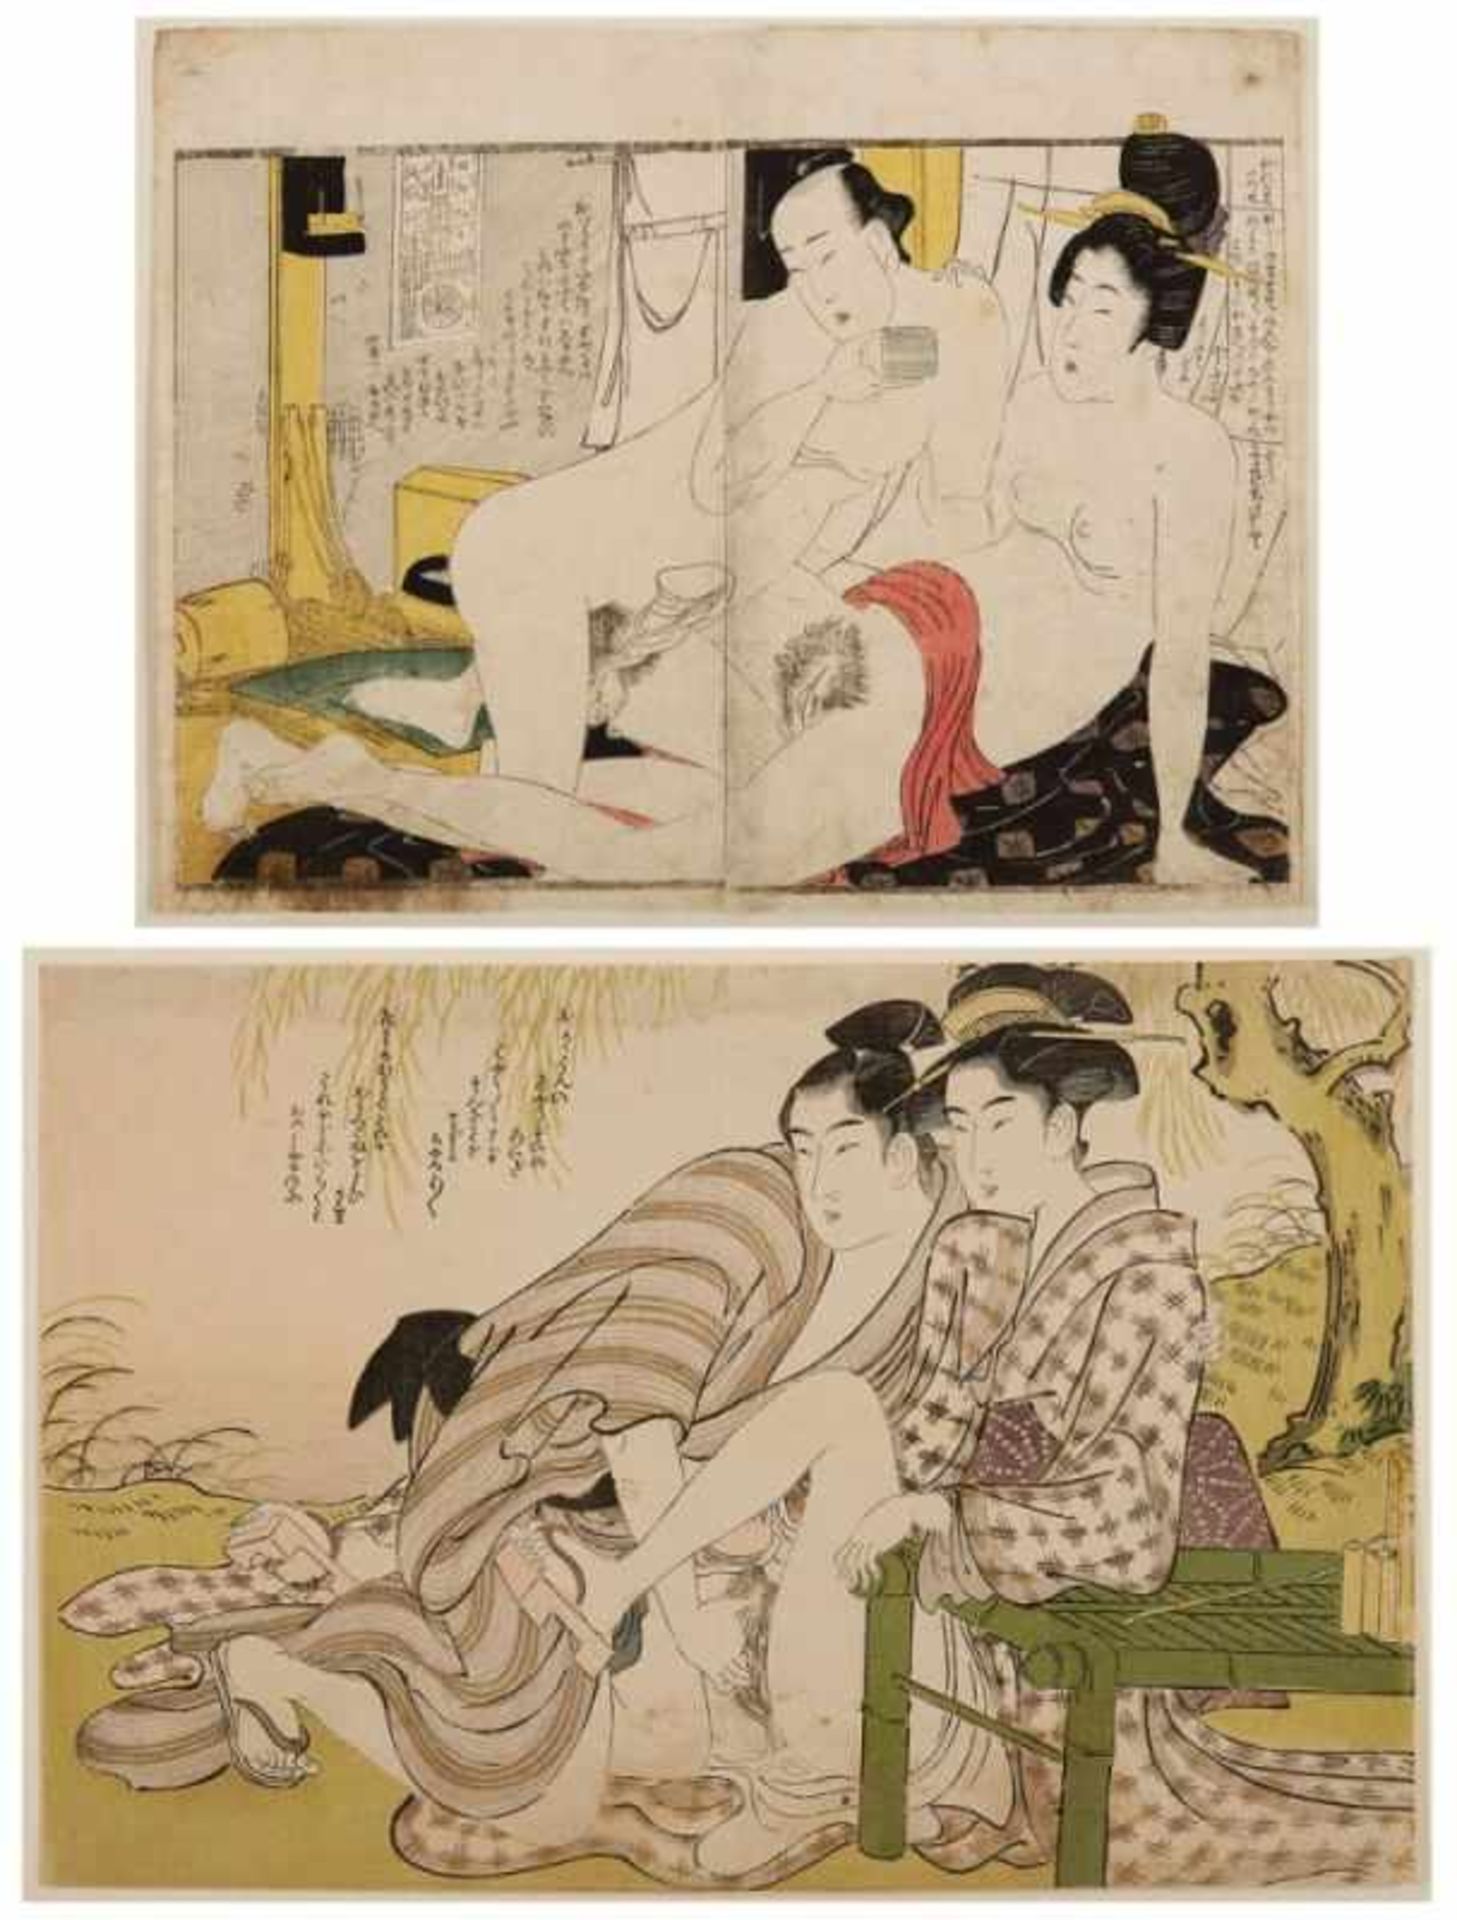 2 Farbholzschnitte Utamaro Kitawaga1753 - 1806 "Shunga" 21 x 26,4 und 21,5 x 31,8 cm, o. R.